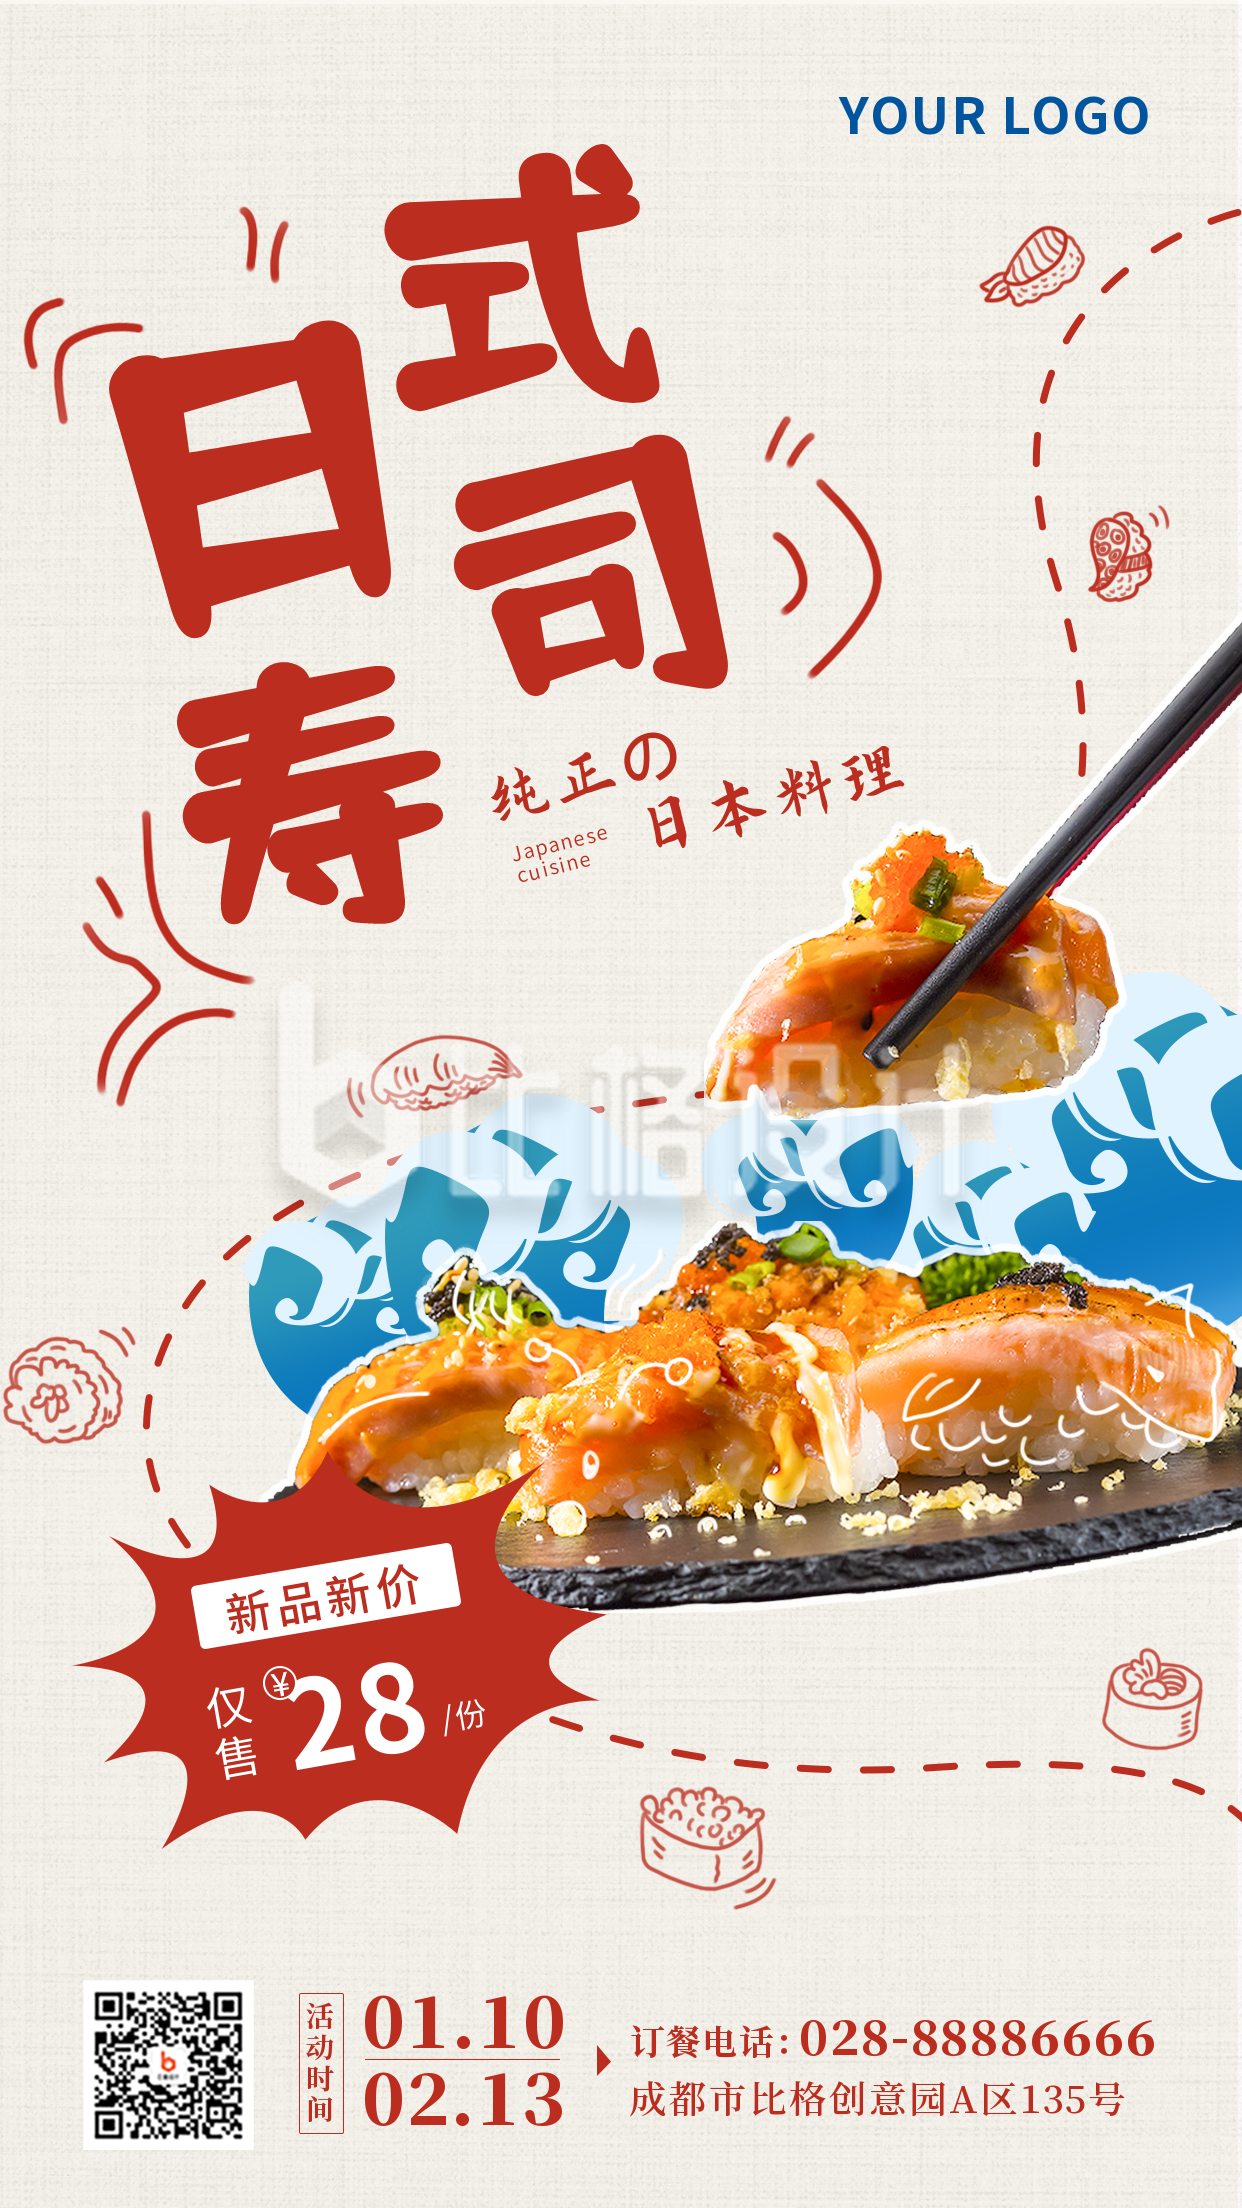 日式寿司美食推荐新品上市手绘涂鸦红色手机海报